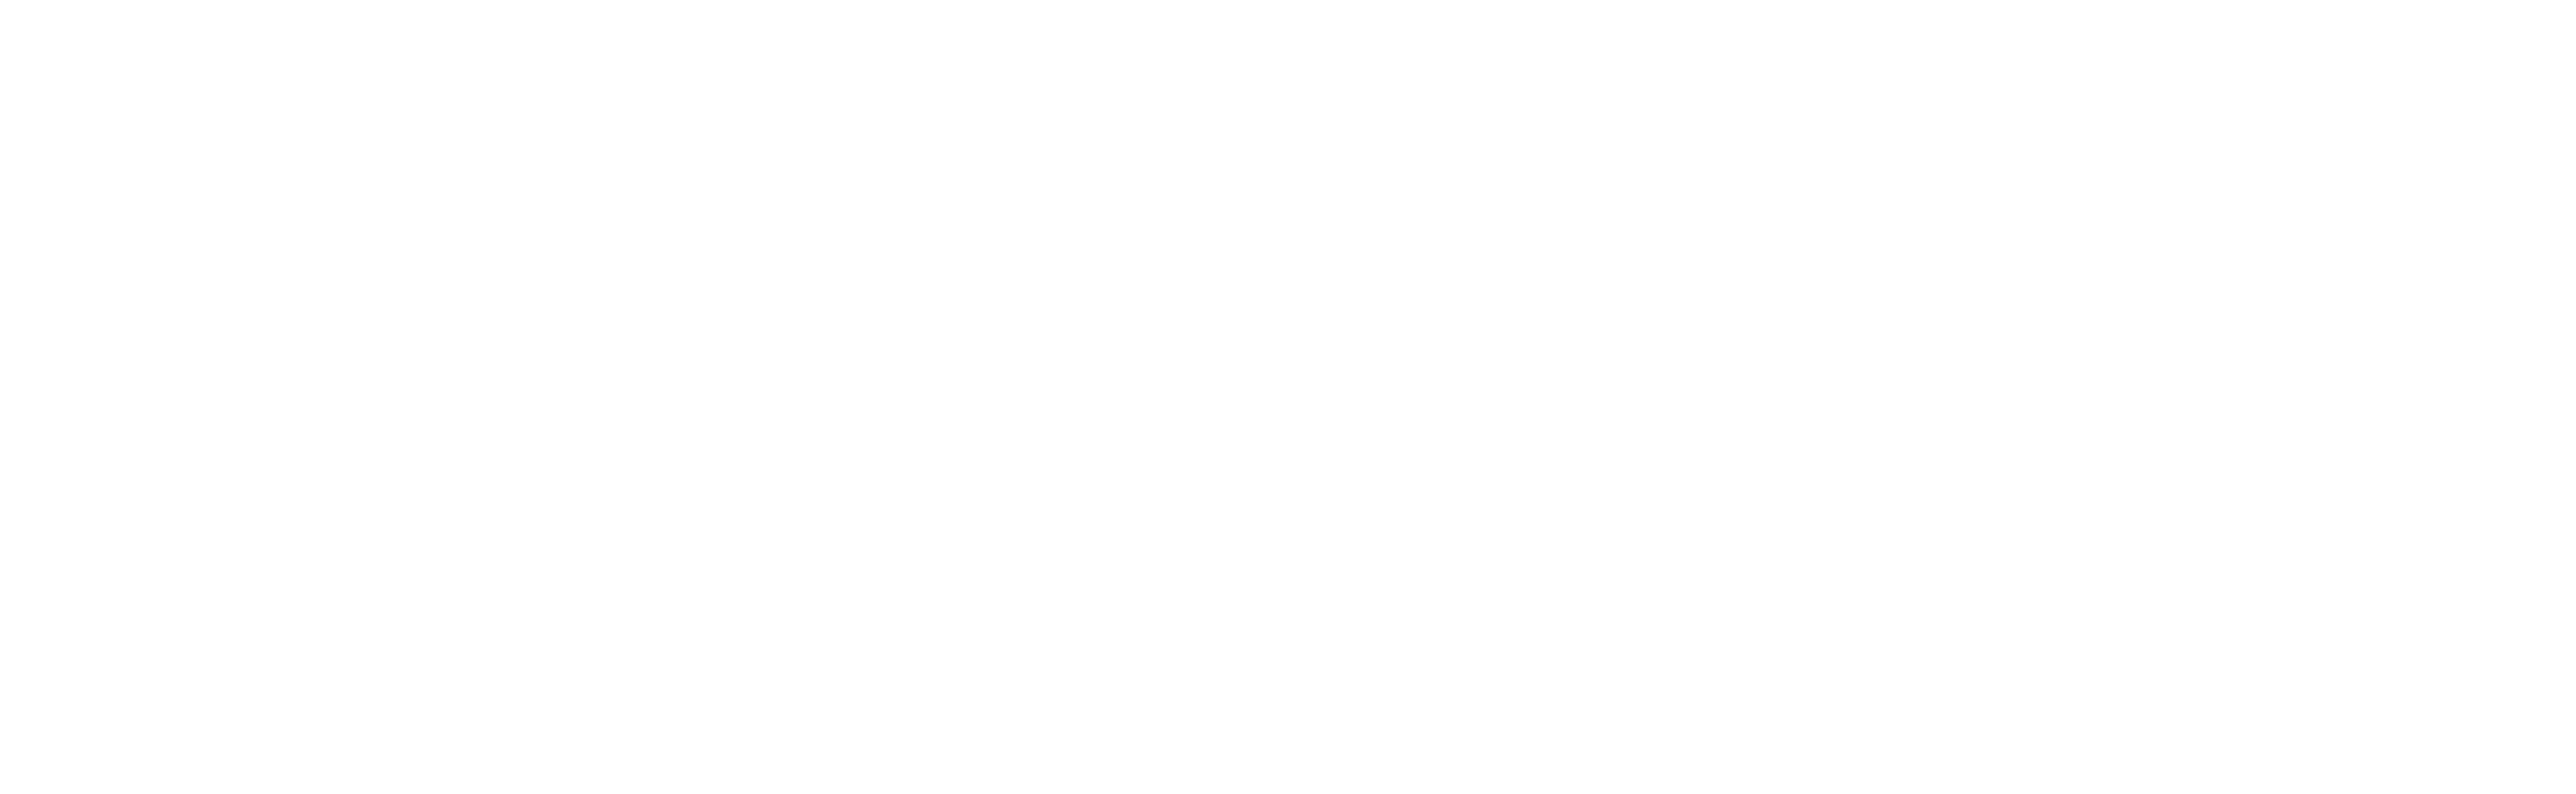 Target Investigation